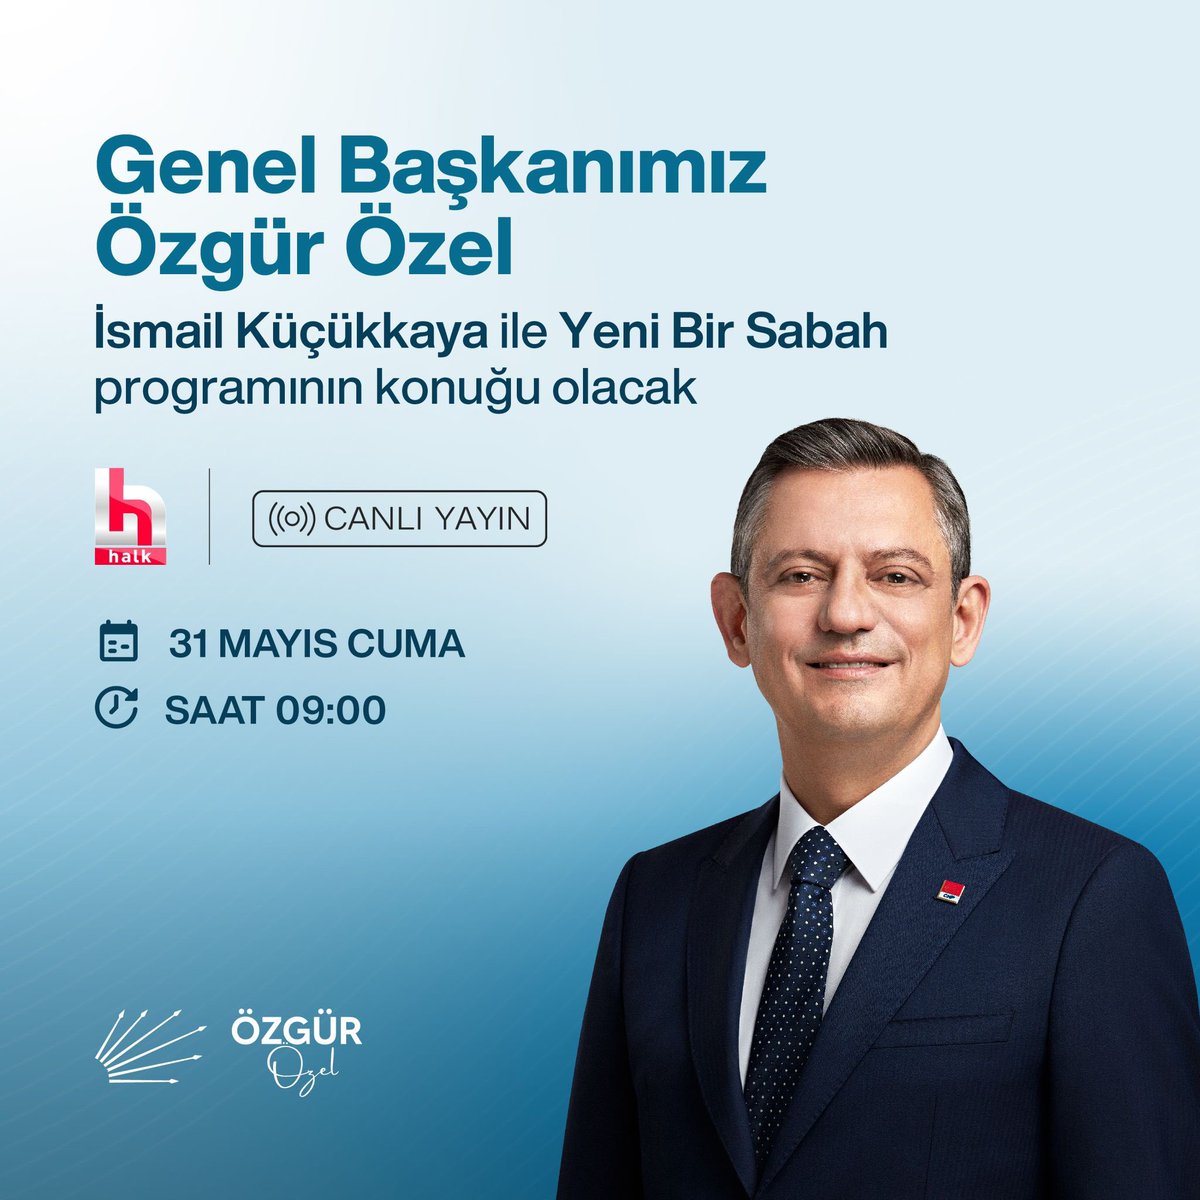 Genel Başkanımız Sayın Özgür Özel, yarın sabah Halk TV’de İsmail Küçükkaya ile Yeni Bir Sabah programının konuğu olacak. 🗓️31 Mayıs Cuma ⏰ 09.00 📍Halk TV